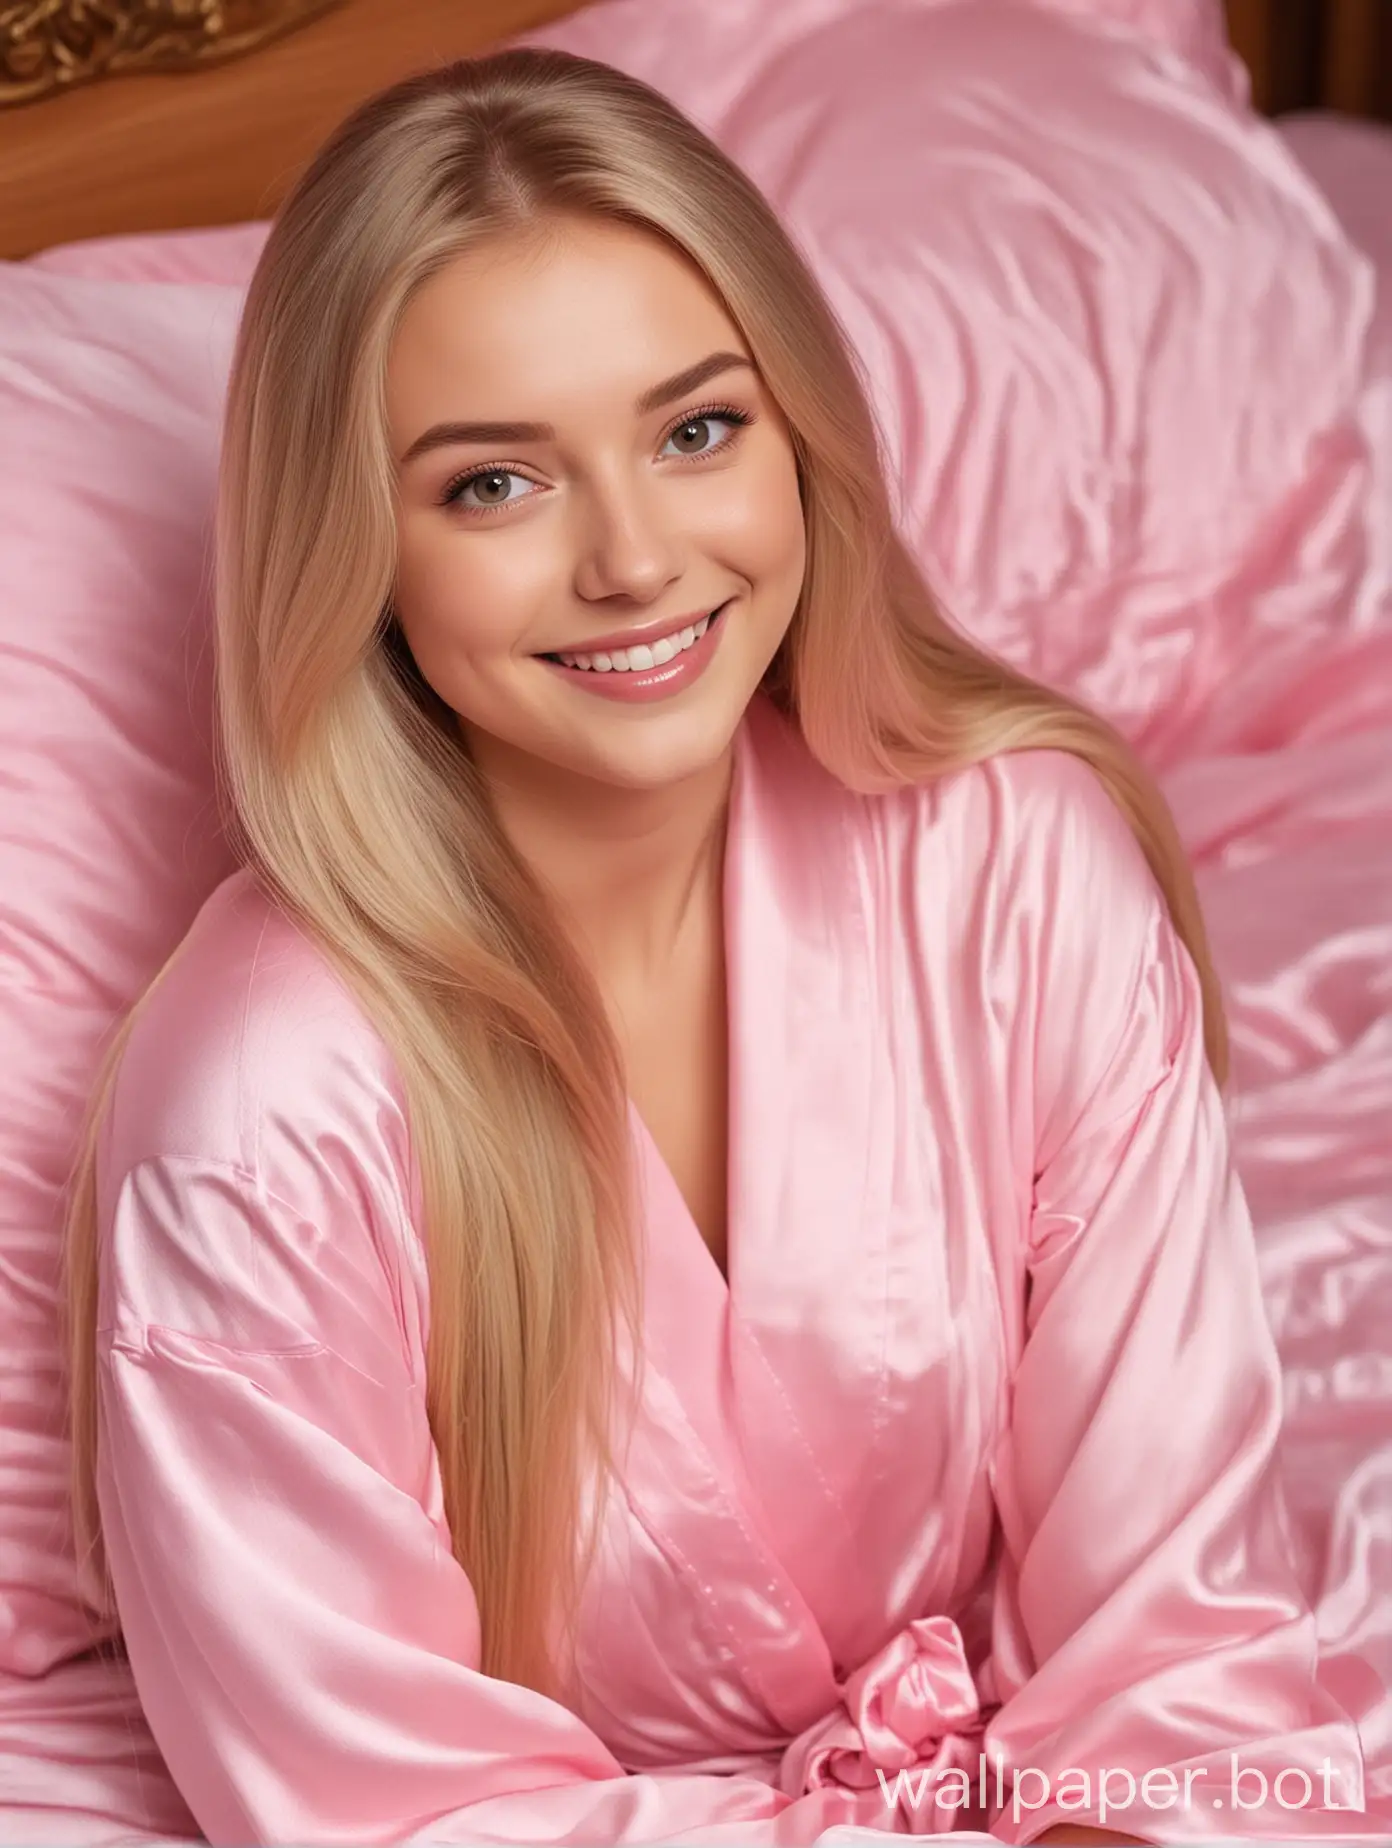 Русская диснеевская блондинка-милашка сестрица Алёнушка с длинными прямыми шелковистыми волосами улыбается в розовом шелковом халате лежит в розовой шелковой кровати